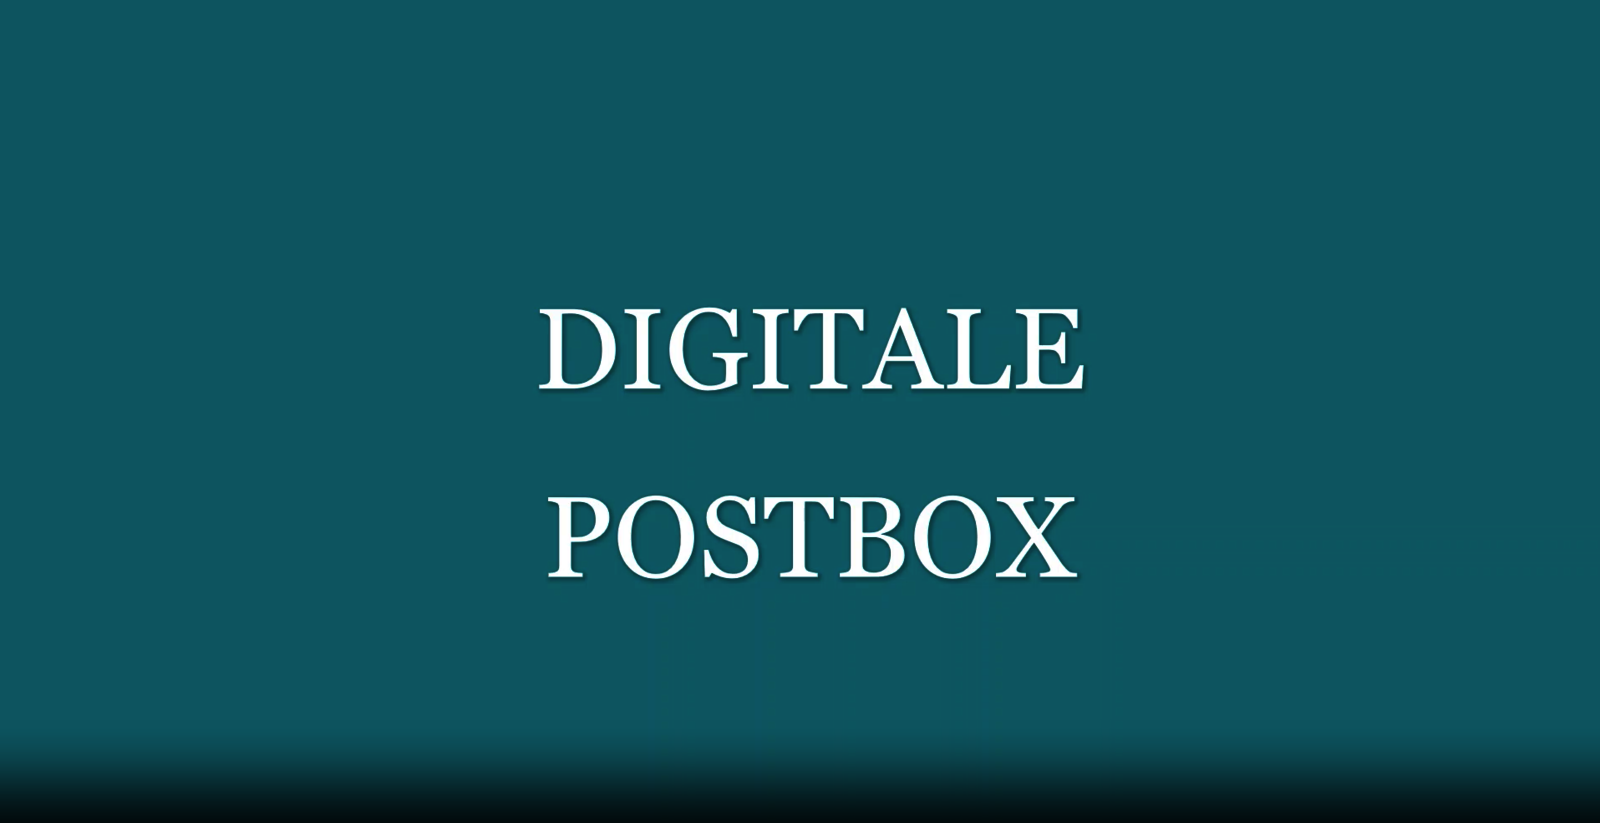 Digitale Postbox Schriftzug